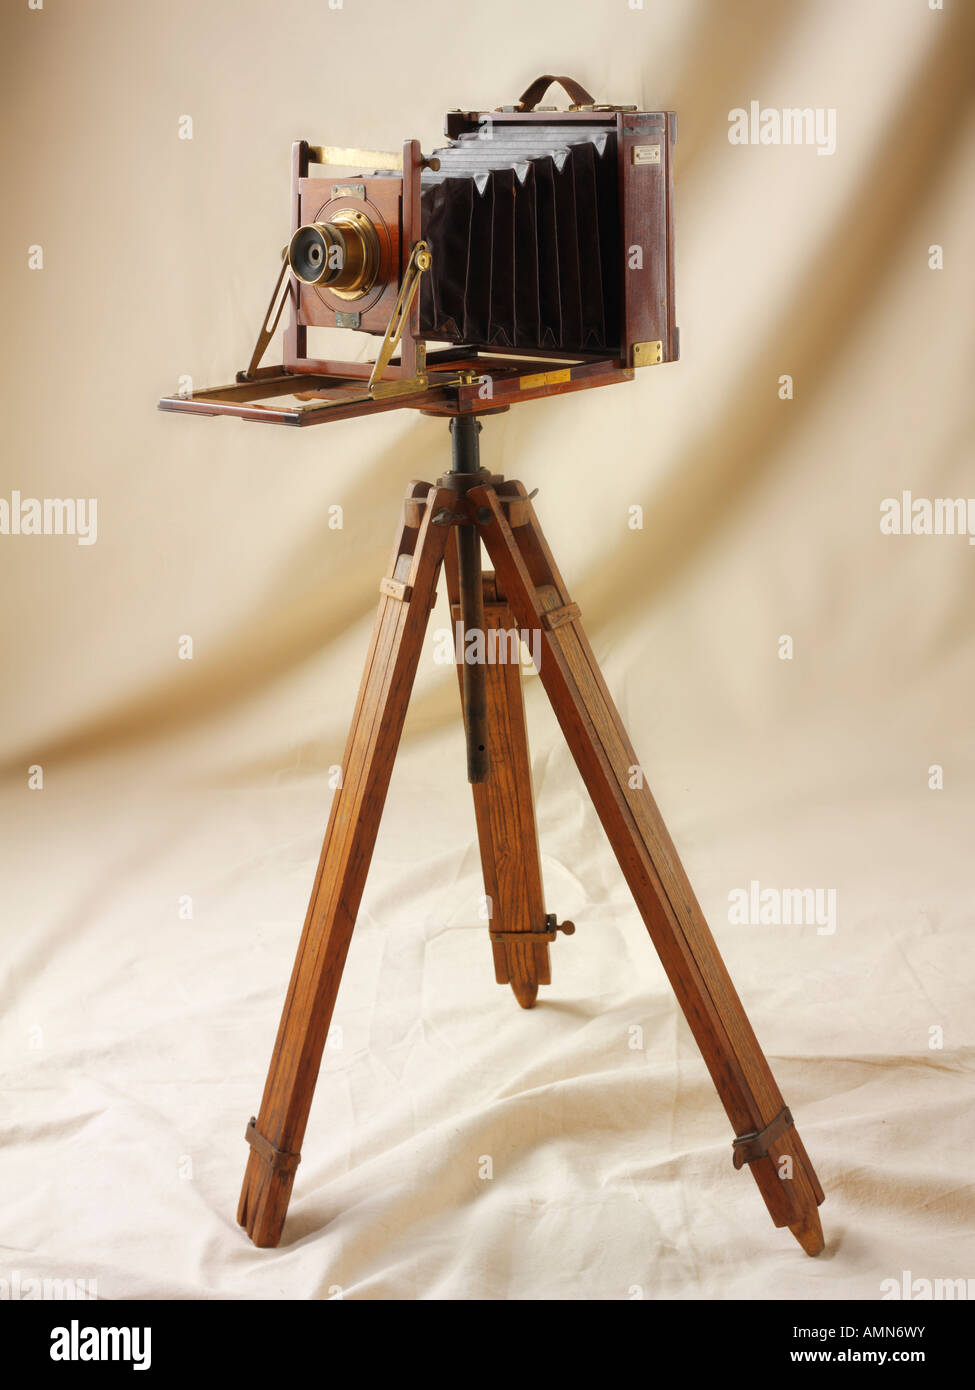 Bilclife Metà piastra vista in legno fotocamera su un treppiede di legno Foto Stock